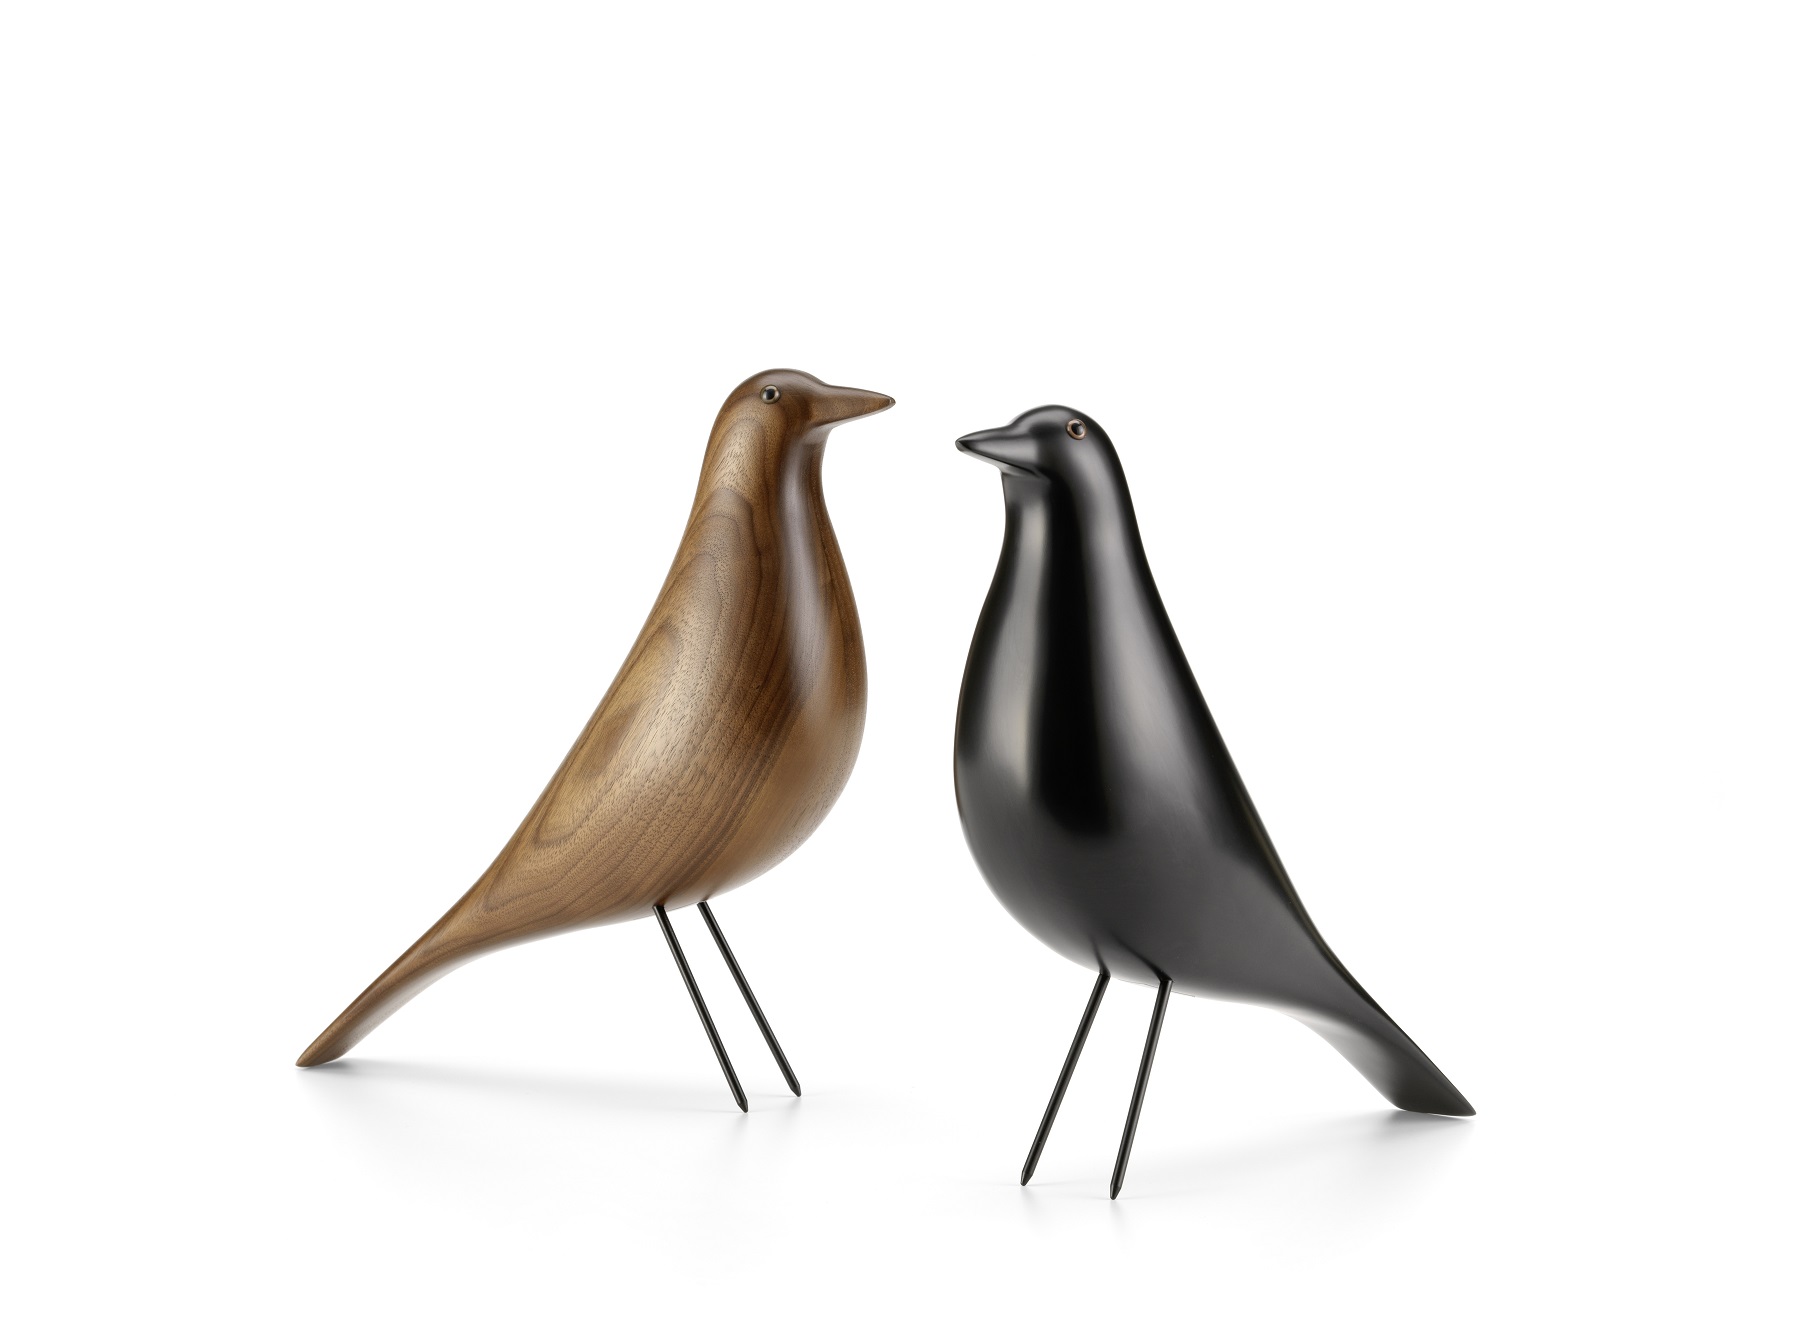 Designobjekt Vogel Eames House bird von vitra im LHL Onlineshop kaufen. Holz und schwarz